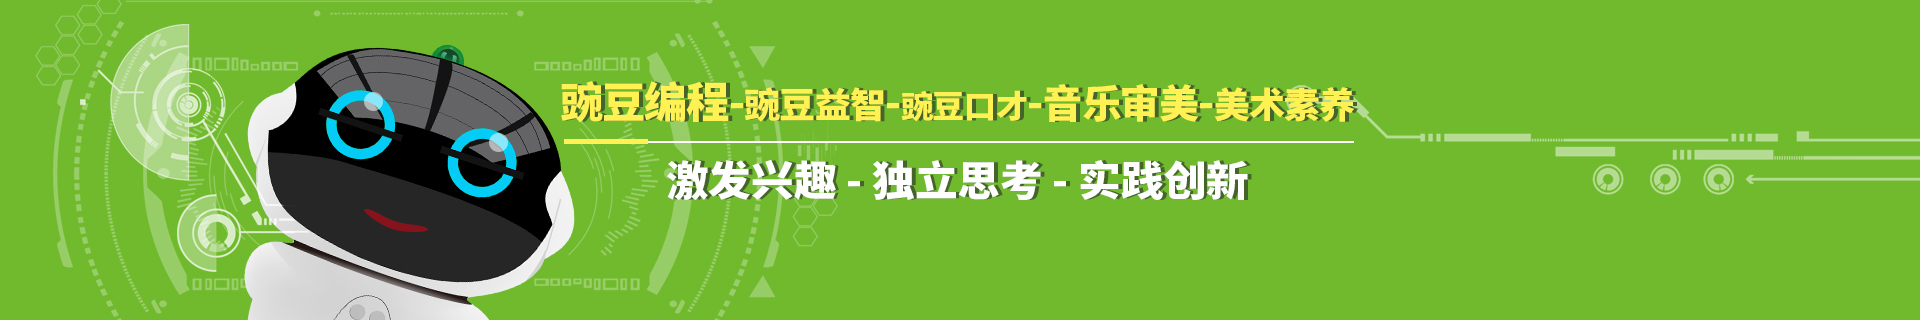 广州豌豆素质教育